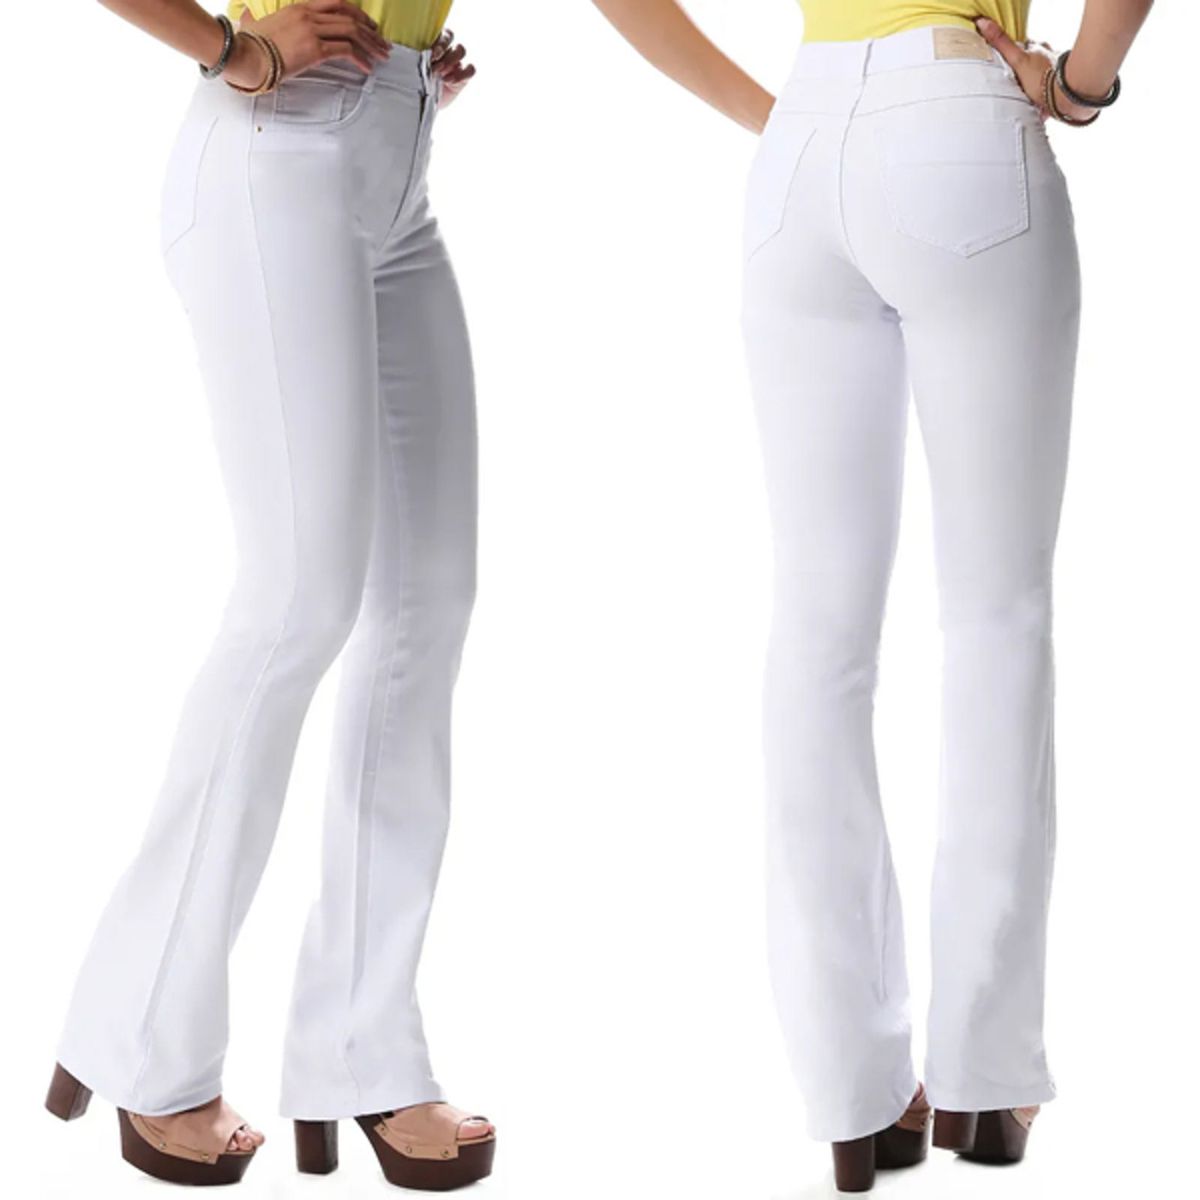 calça jeans feminina branca cos alto